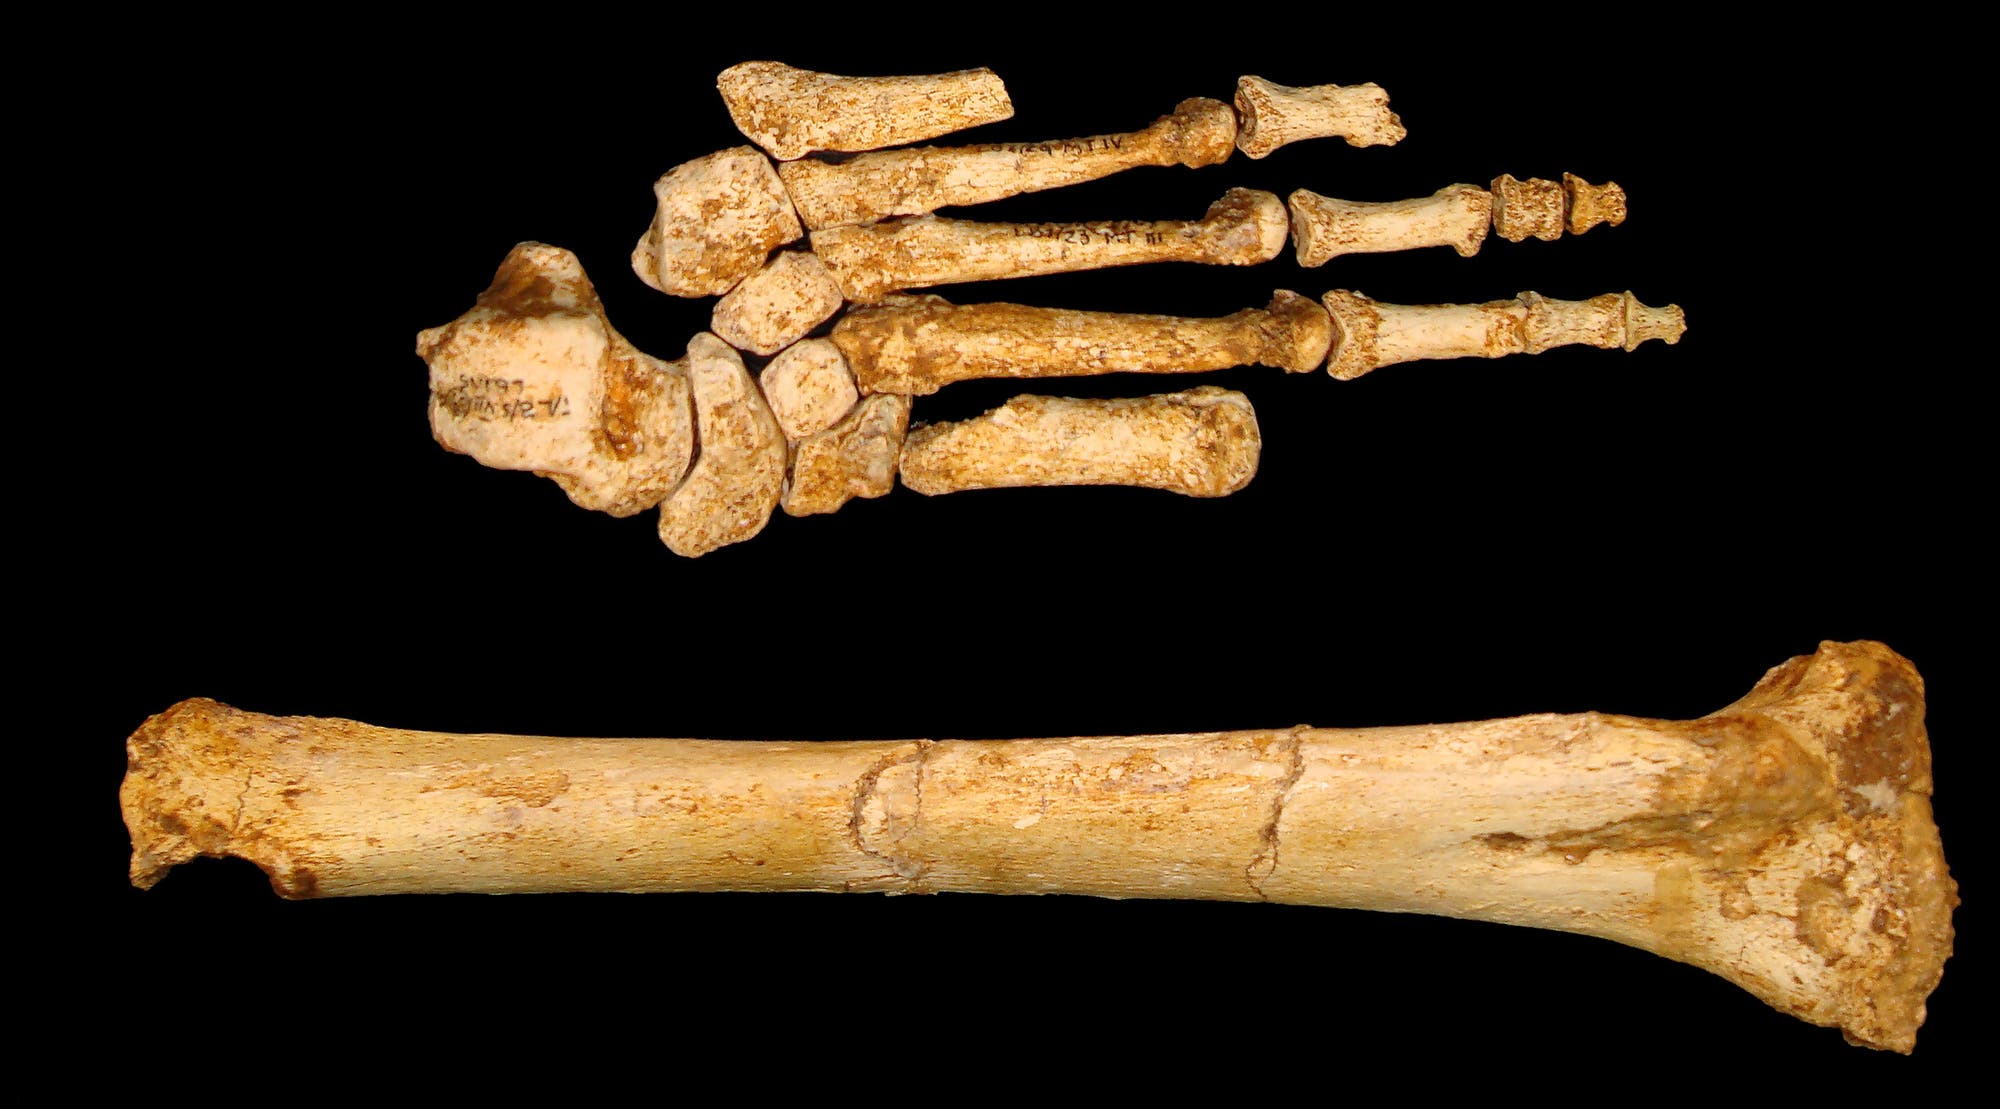 Fuß und Schienbein von Homo floresiensis